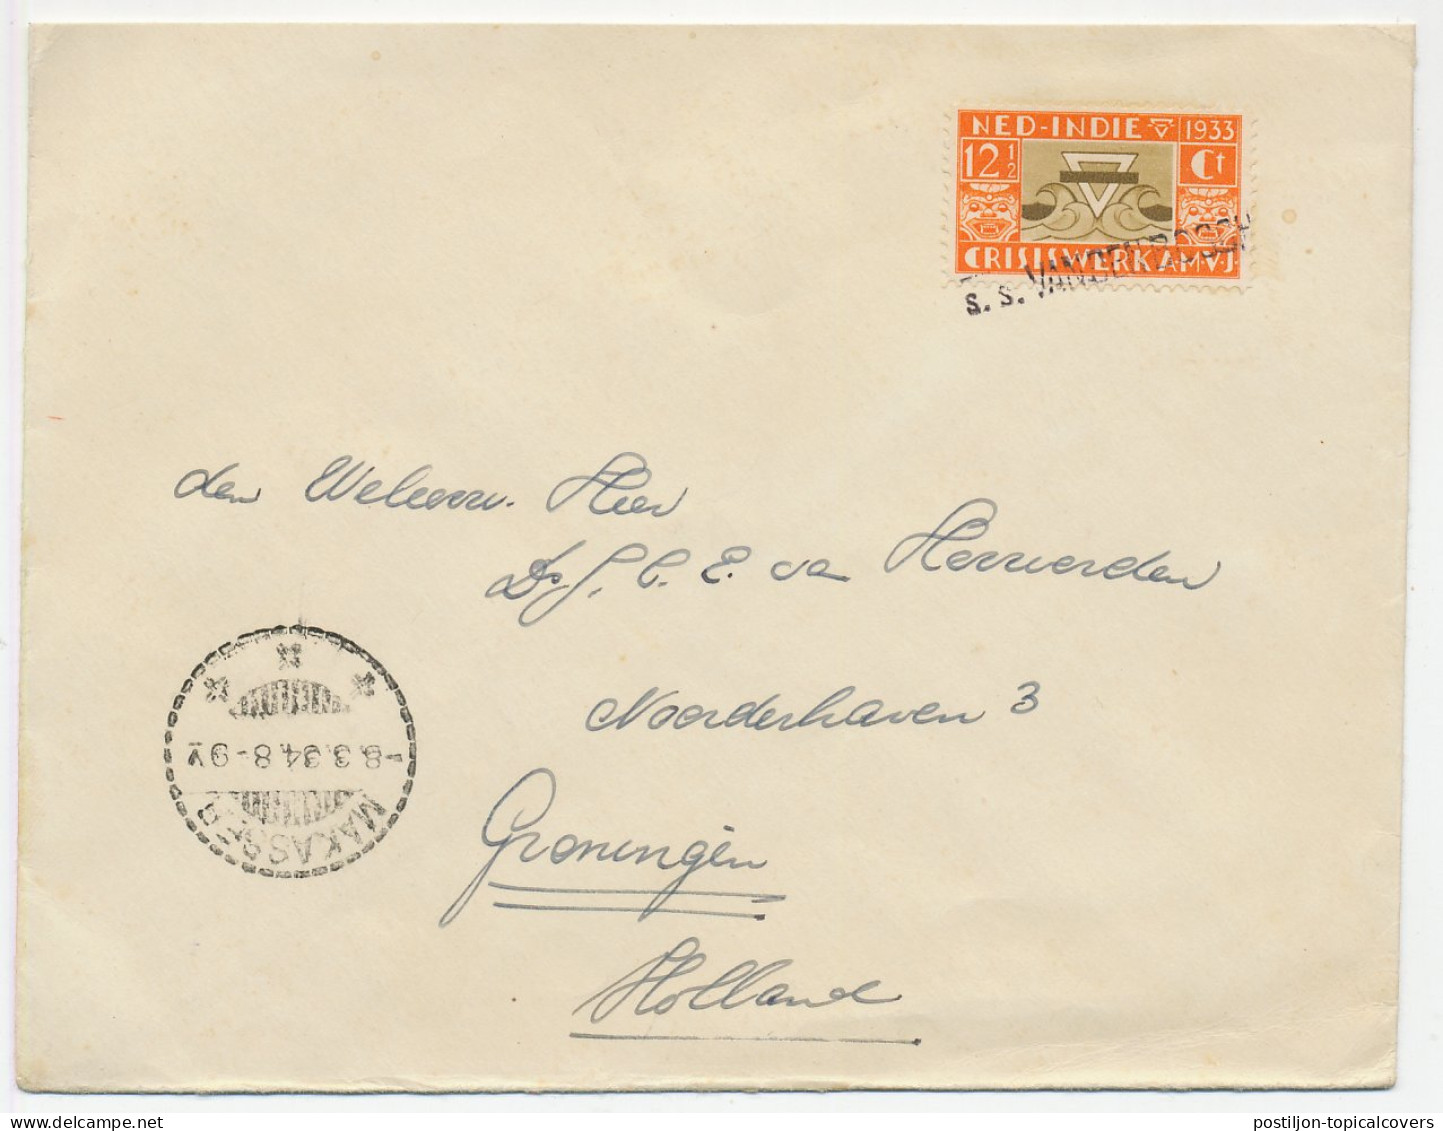 Ship Mail Netherlands Indies - Postmark S.s.VANDENBOSCH 1934 - Nederlands-Indië